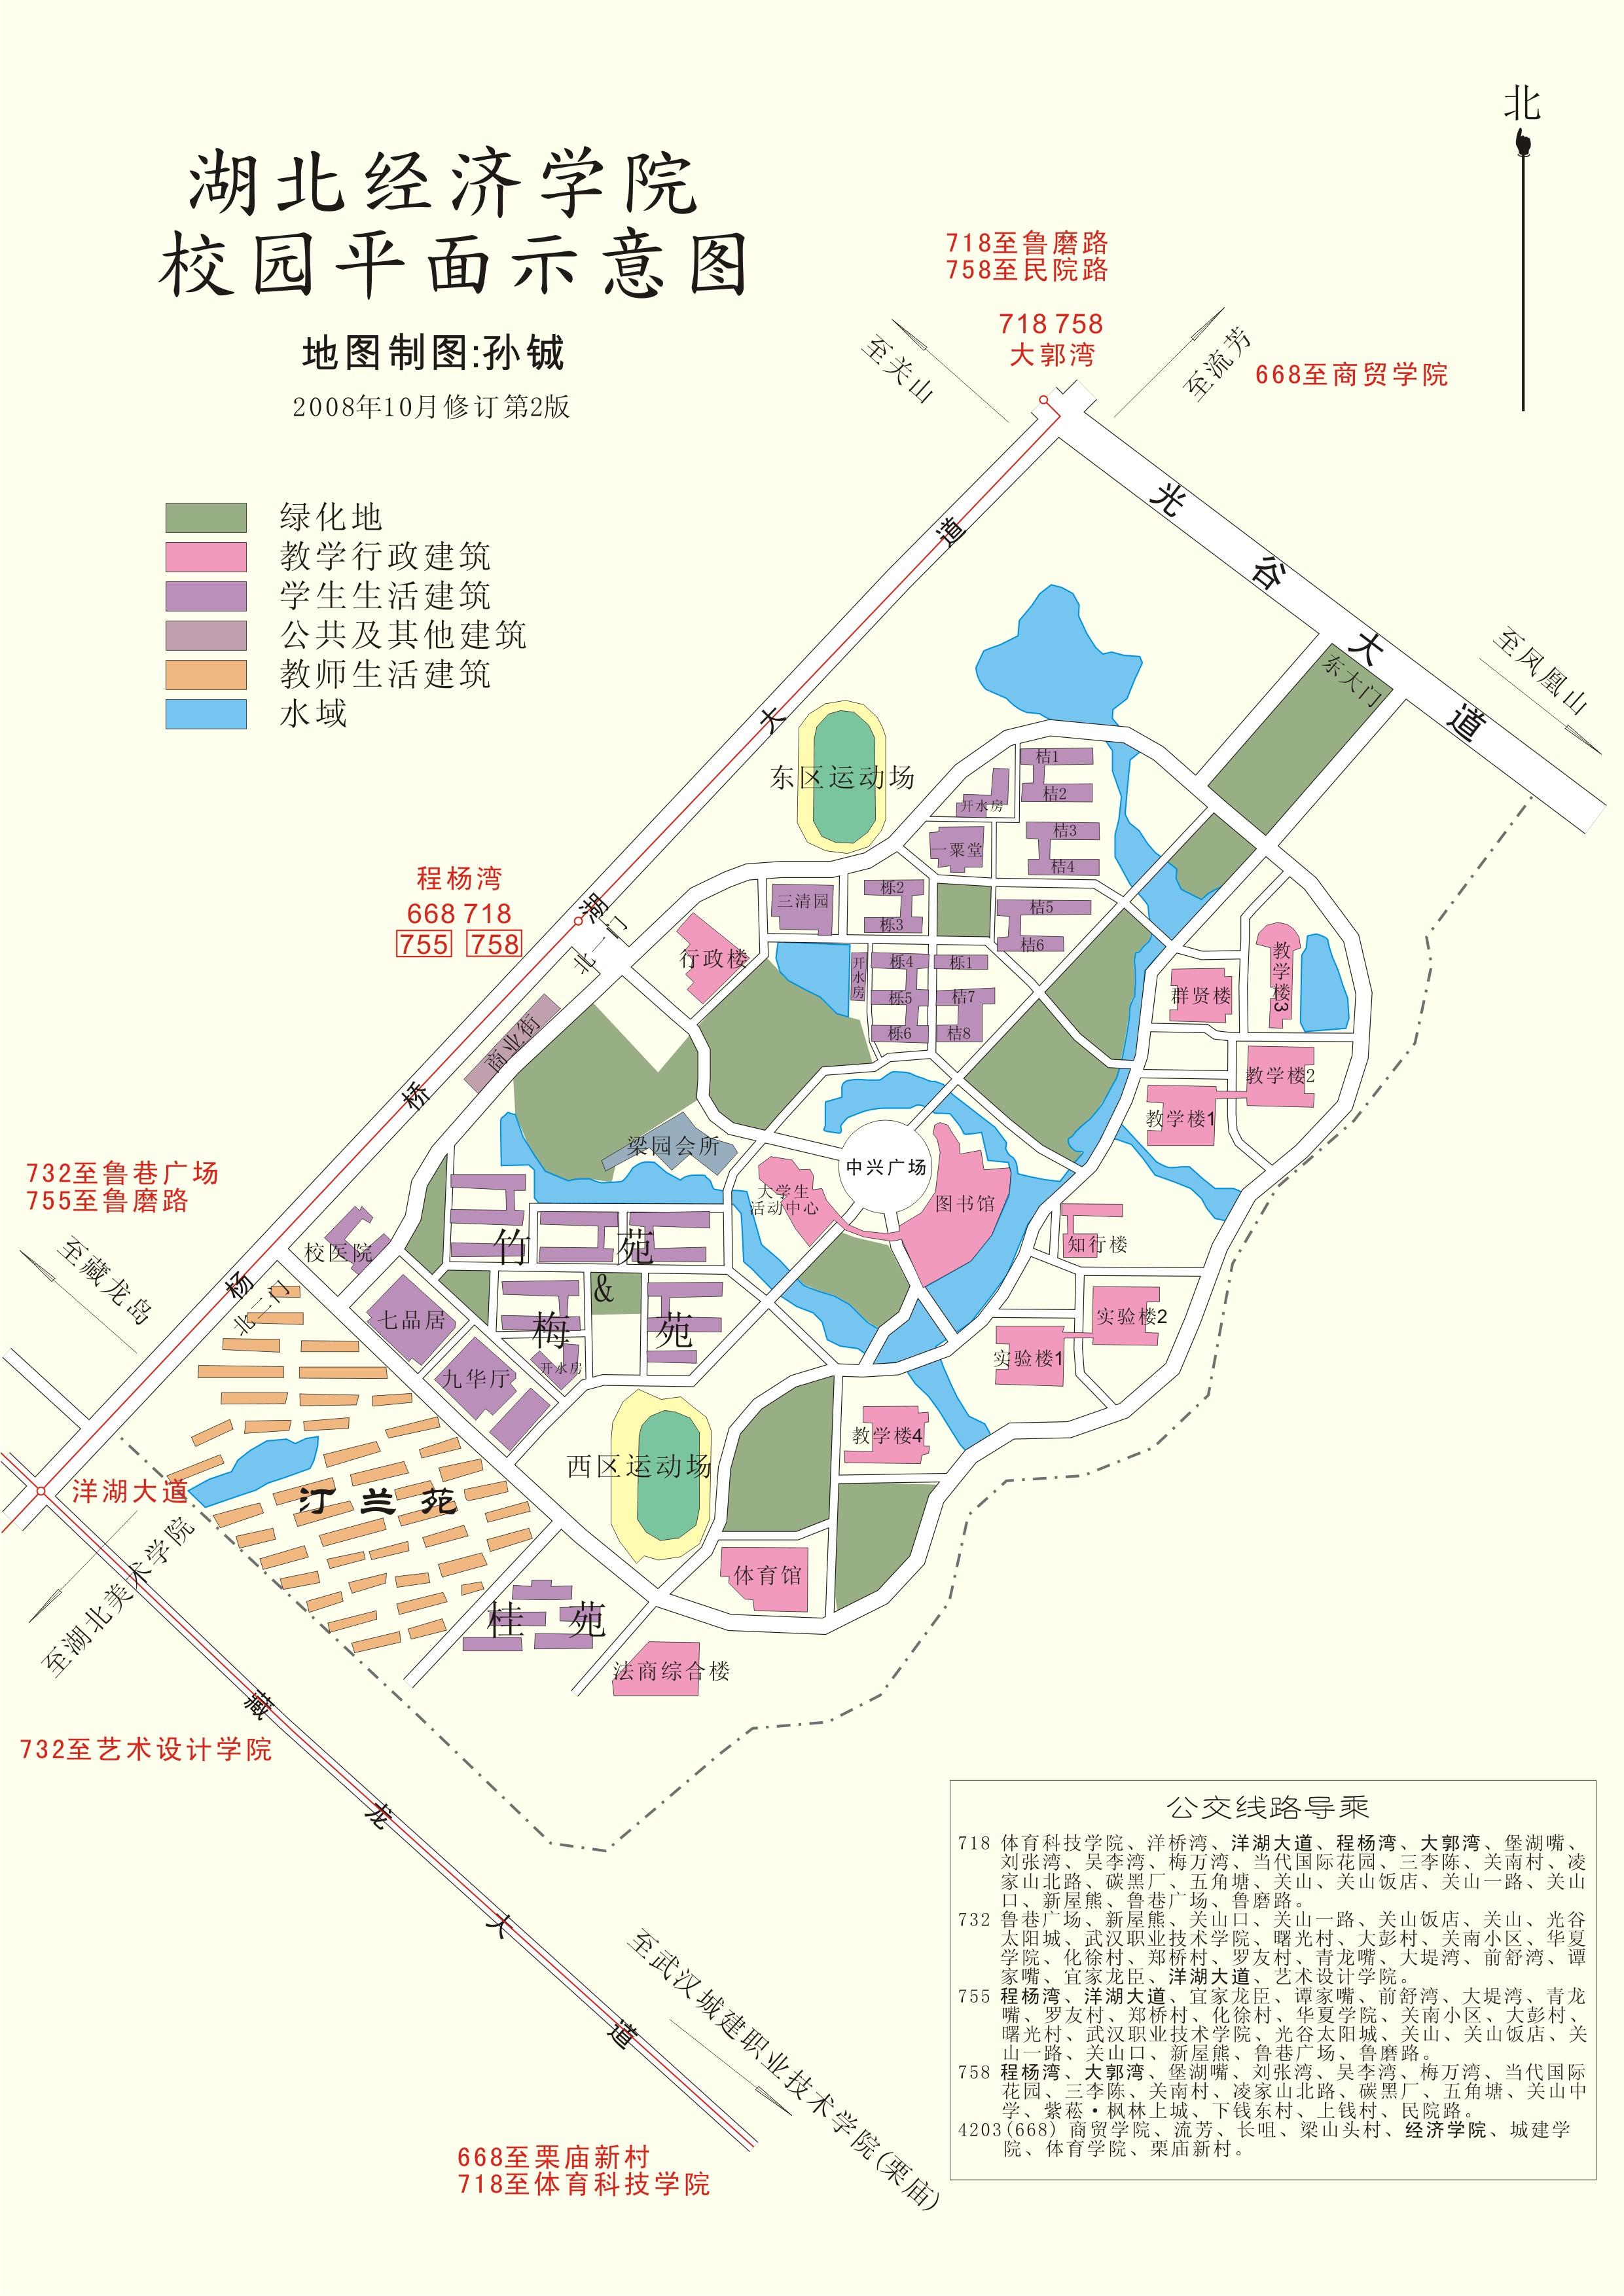 海口经济学院 地图图片